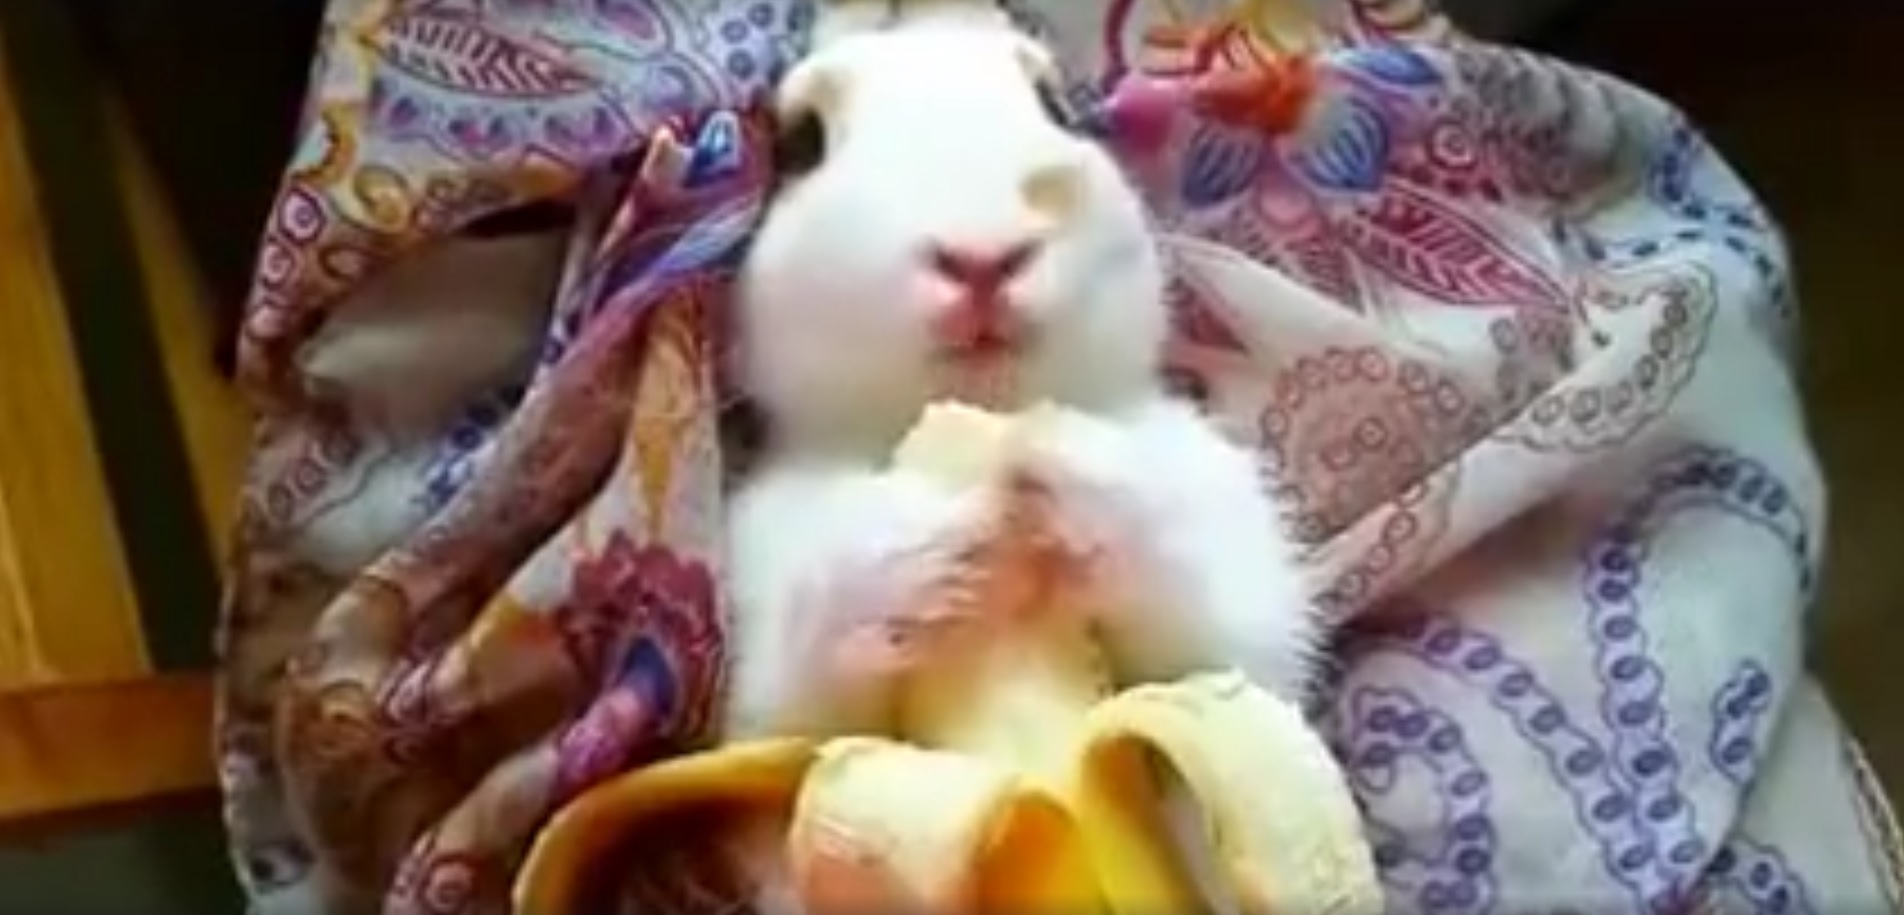 Monday Cute Bunny Eating Banana The Mary Sue